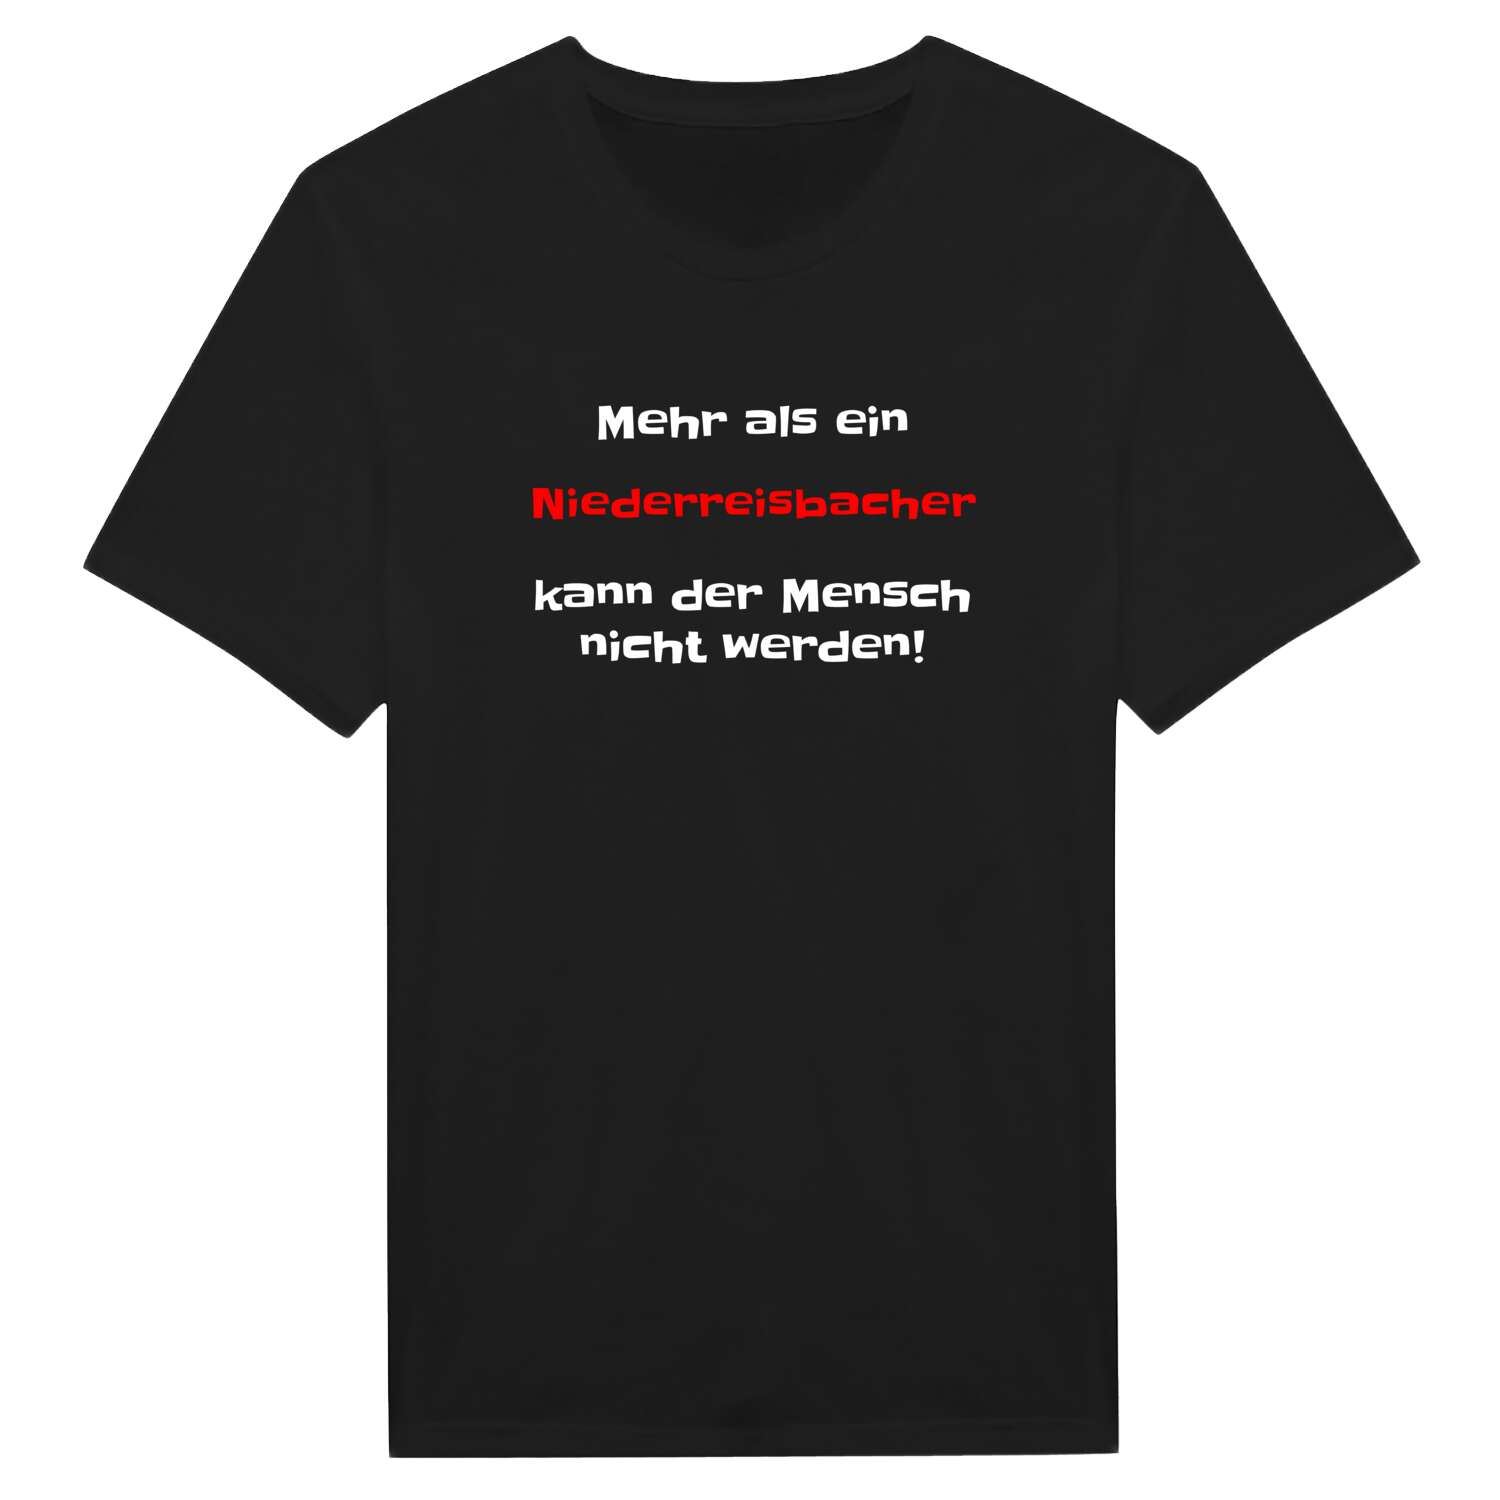 Niederreisbach T-Shirt »Mehr als ein«